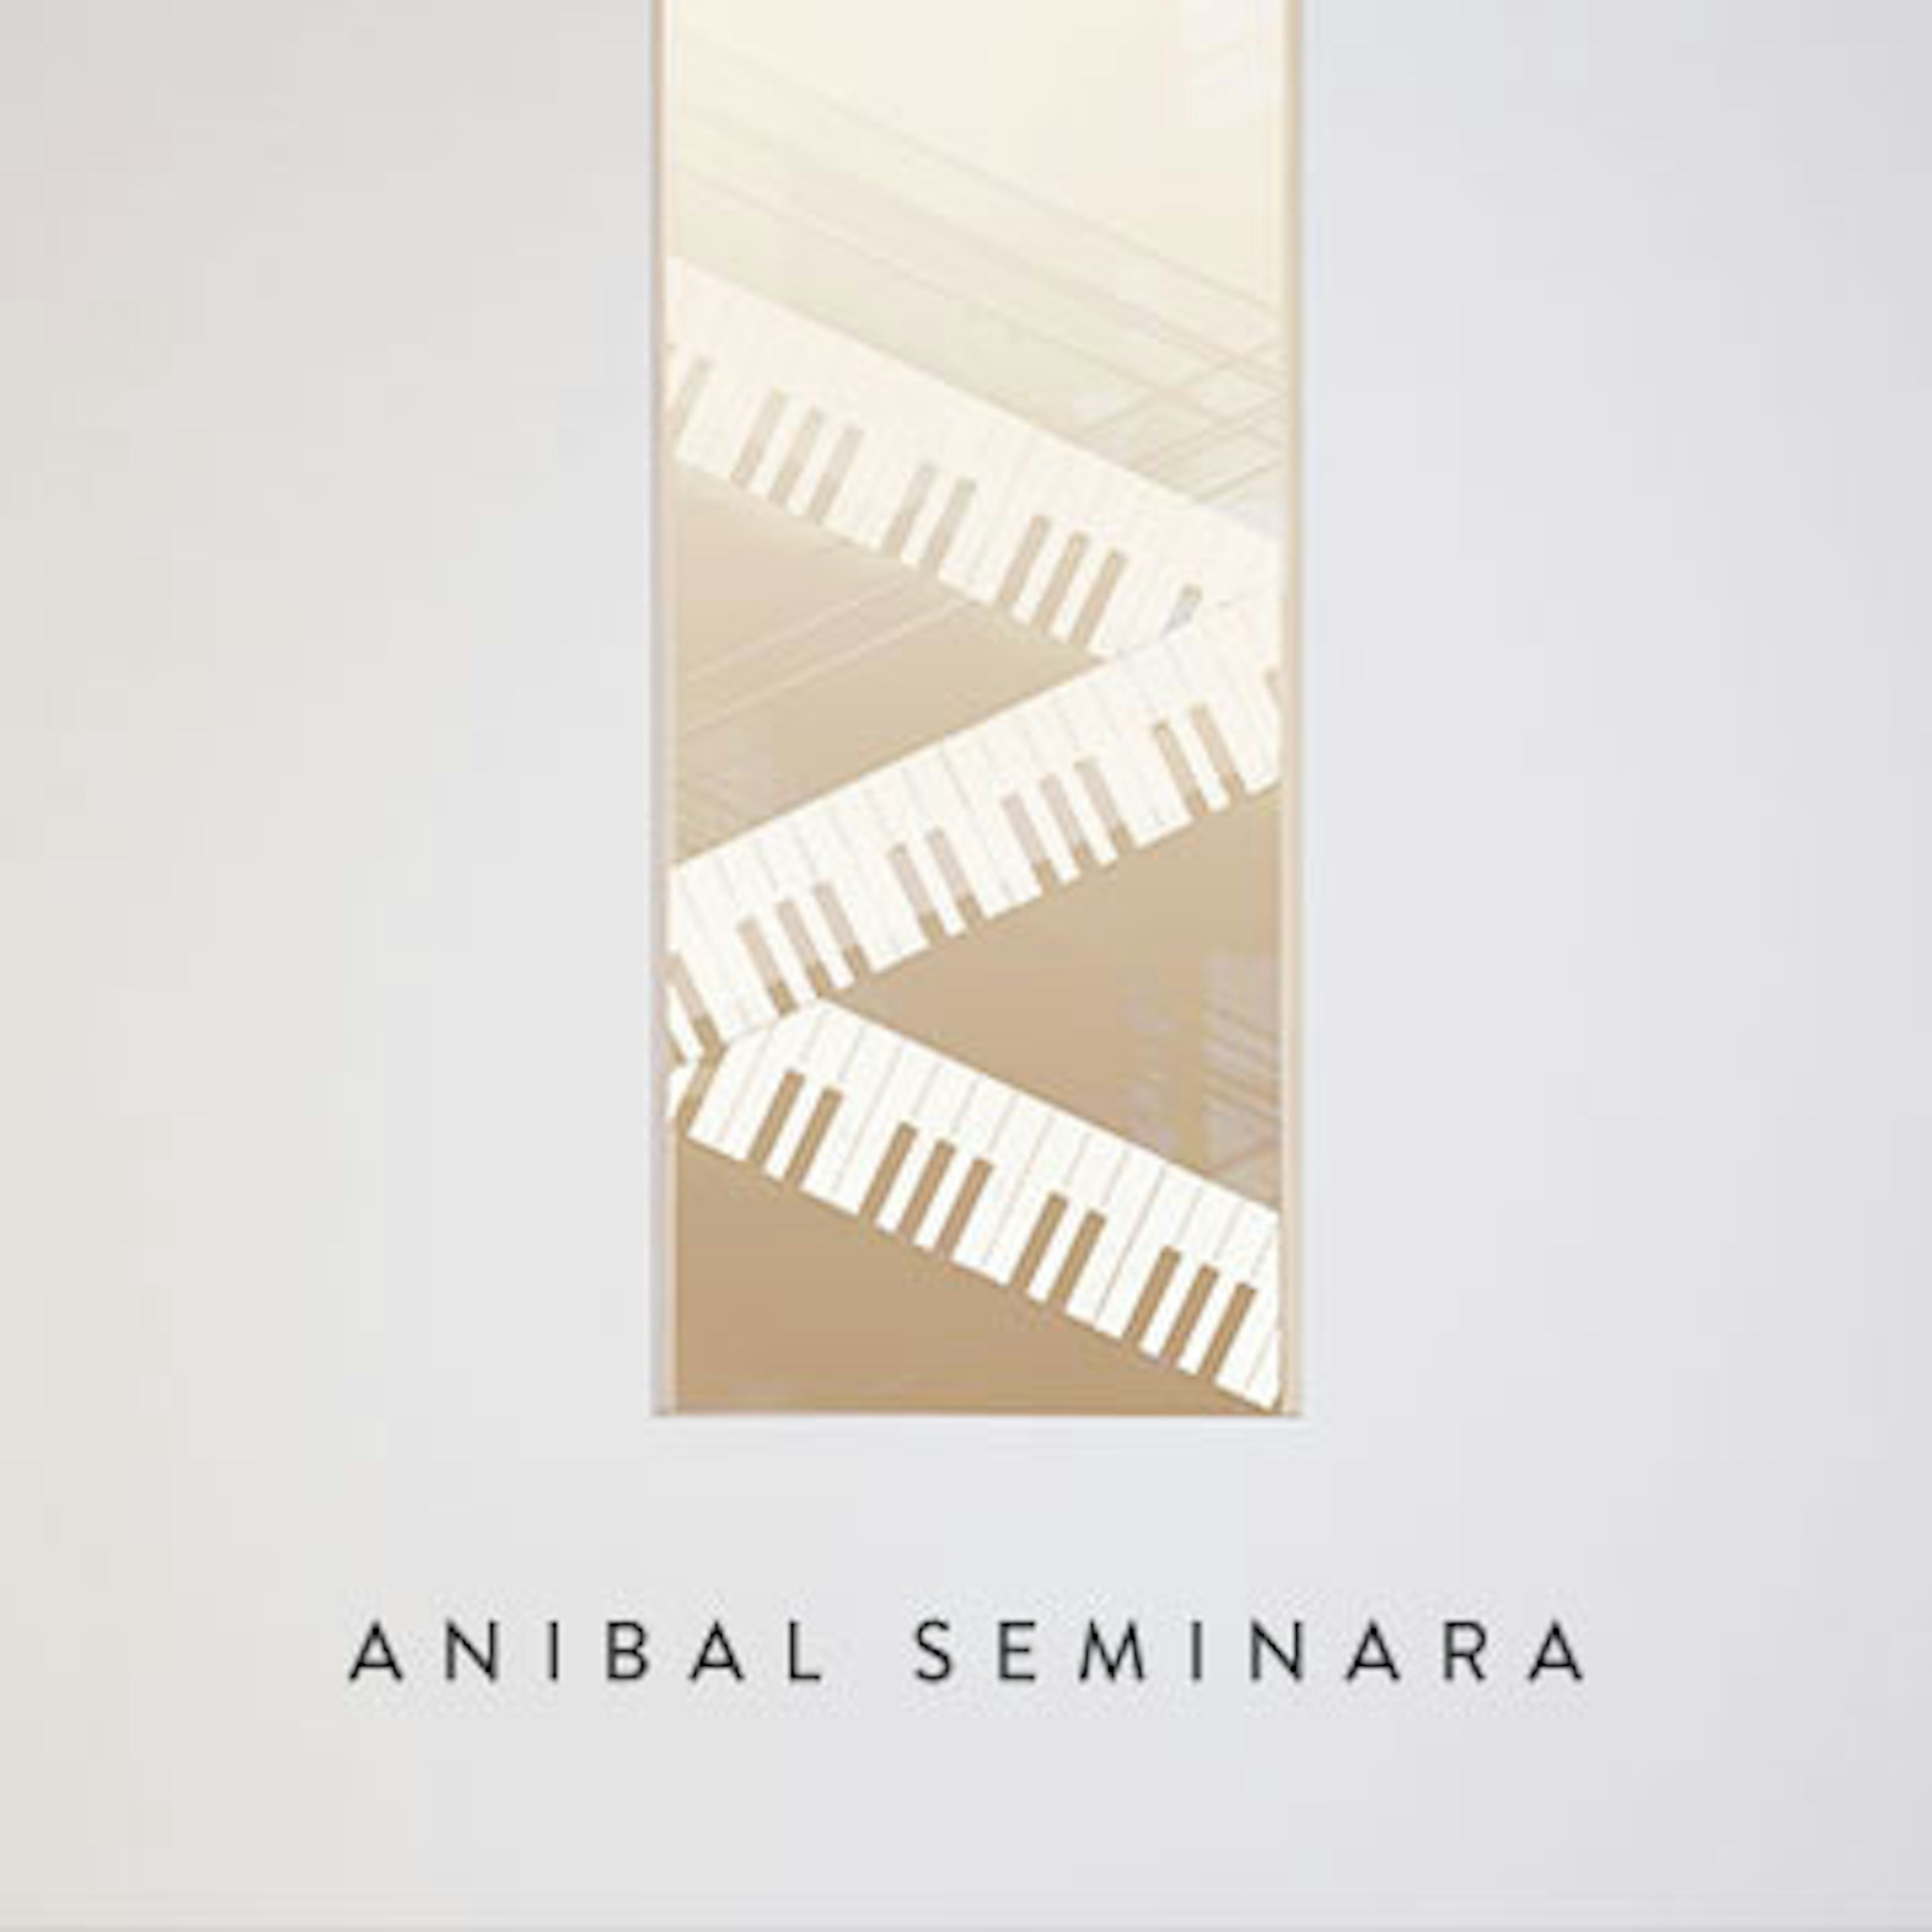 Anibal Seminara artwork